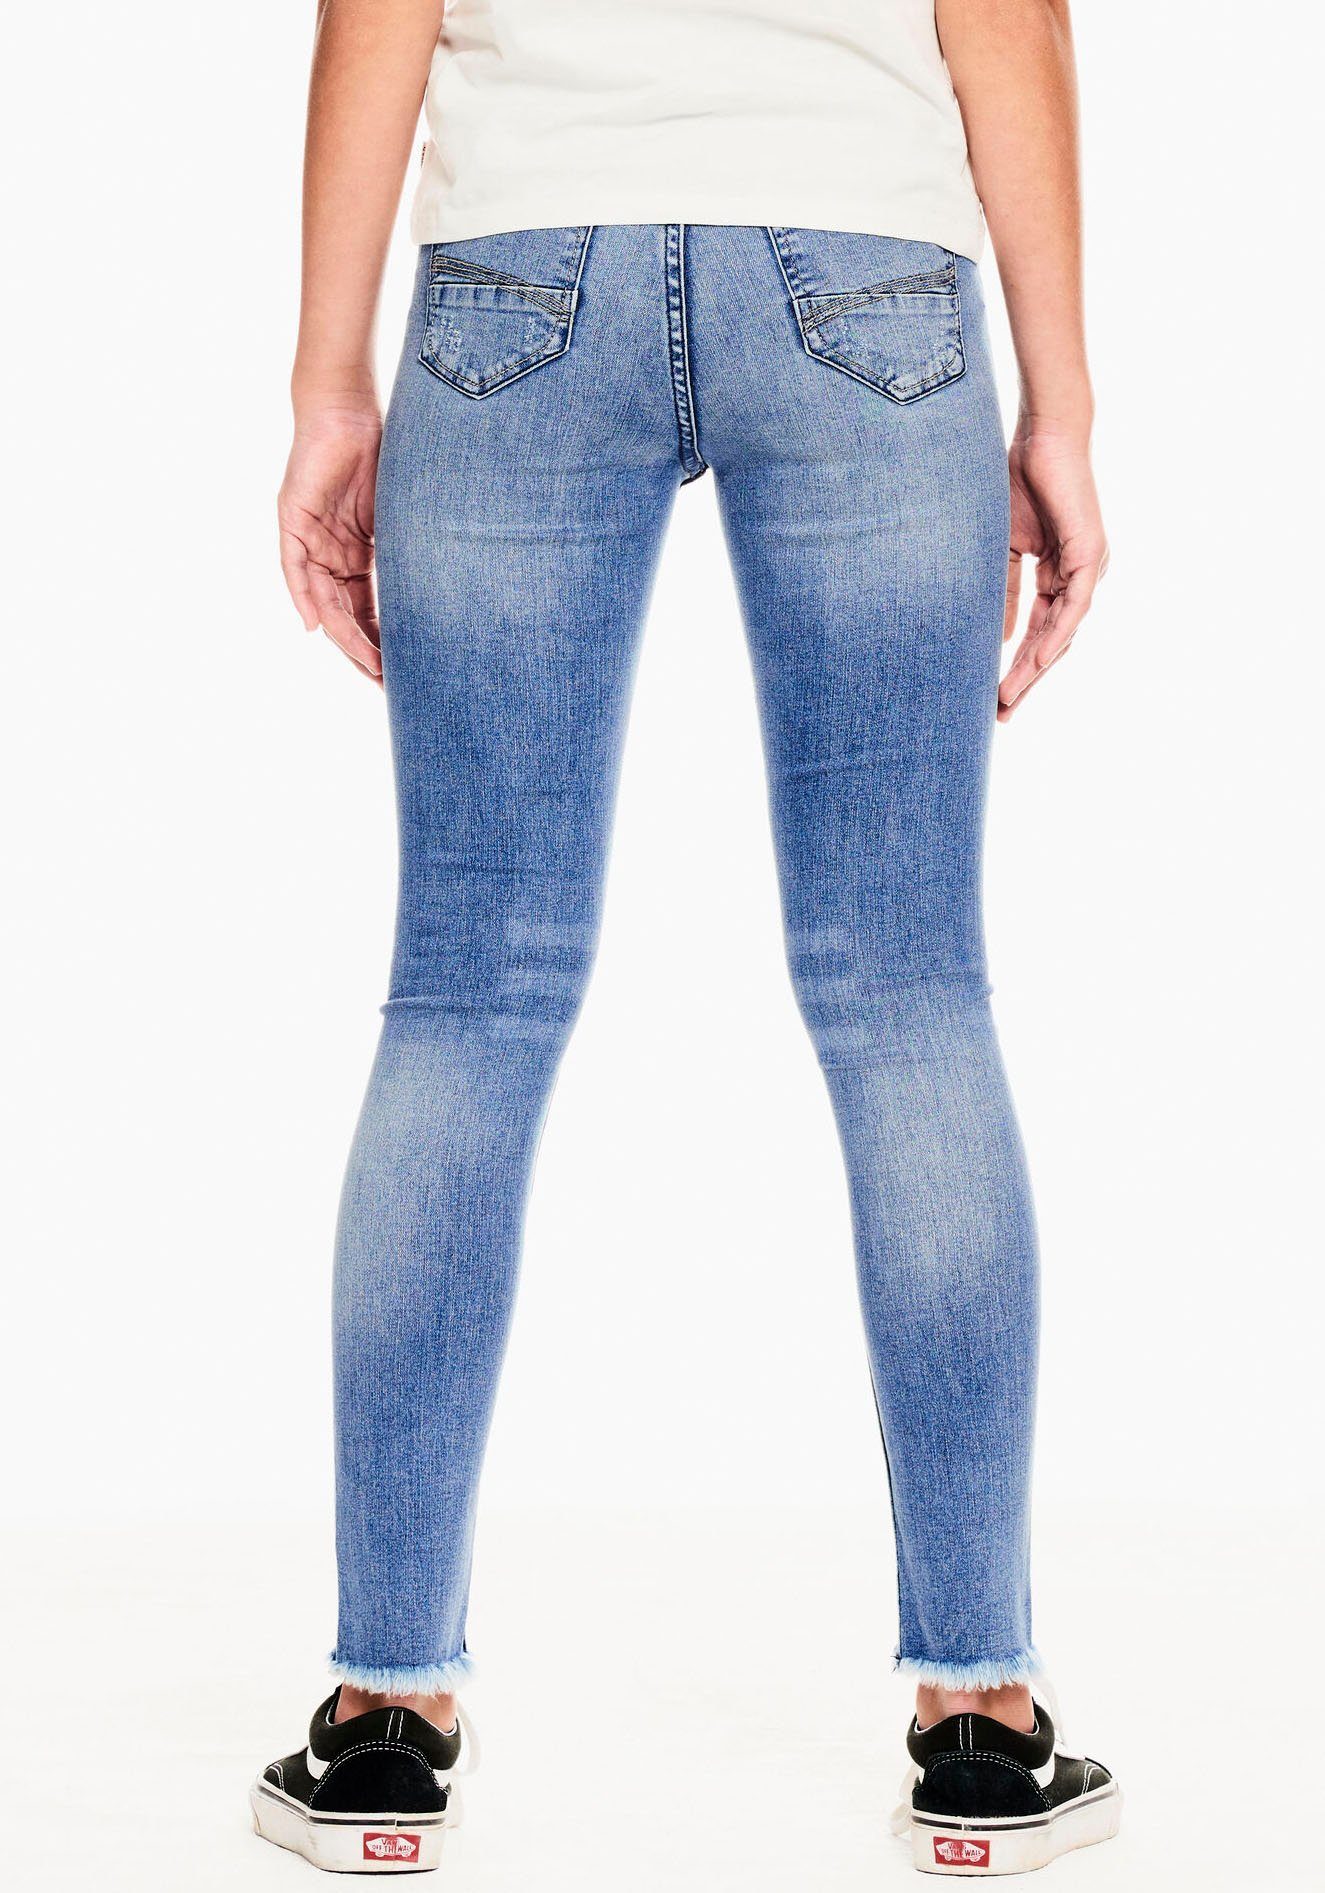 570 Stretch-Jeans mit Garcia Rianna Destroyed-Effekten